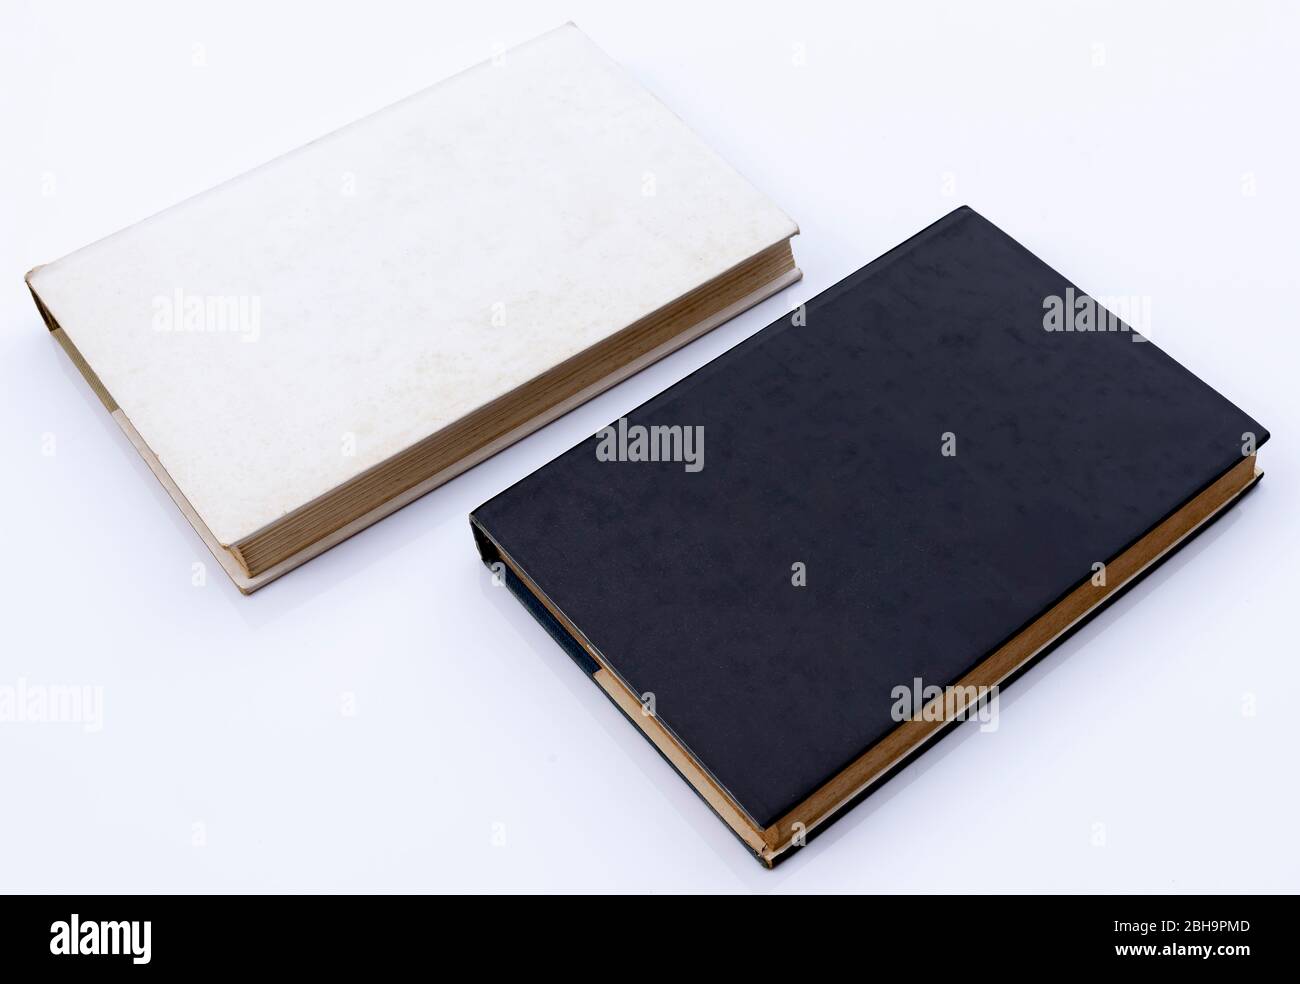 les anciens livres de papier couverture rigide, un blanc et l'autre noir, sont placés sur un fond blanc Banque D'Images